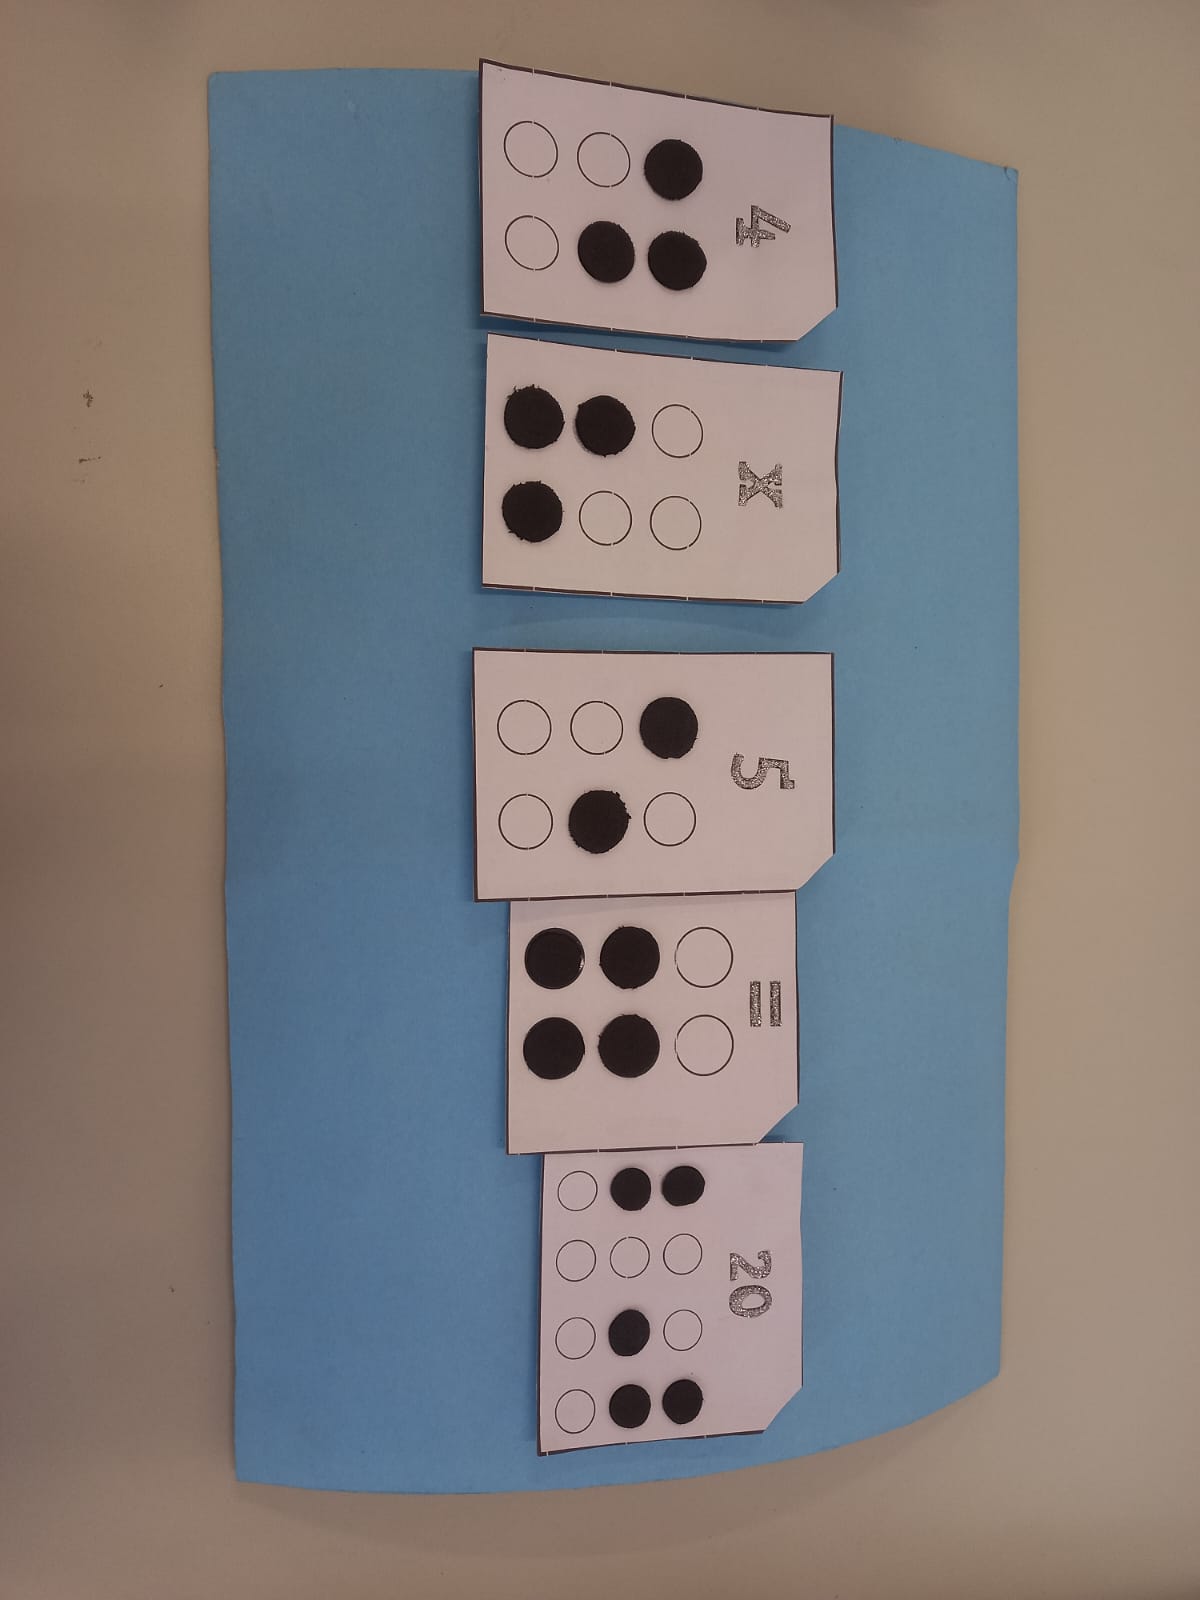 5 pedaços de papel retangulares. O primeiro possui em título o número 4 e, logo abaixo, a escrita em braille desse número. A segunda figura segue o mesmo princípio, mas o título é a letra X, simbolizando uma multiplicação, e abaixo do título a mesma letra escrita em braille. Logo após temos o número 5 e sua escrita em braille, seguido pelo sinal de igualdade e sua escrita em braille, que, por sua vez, é seguido pela carta de título 20 com sua escrita em Braille. Dessa forma, a imagem contém a multiplicação de 4 vezes 5 que é igual a 20.